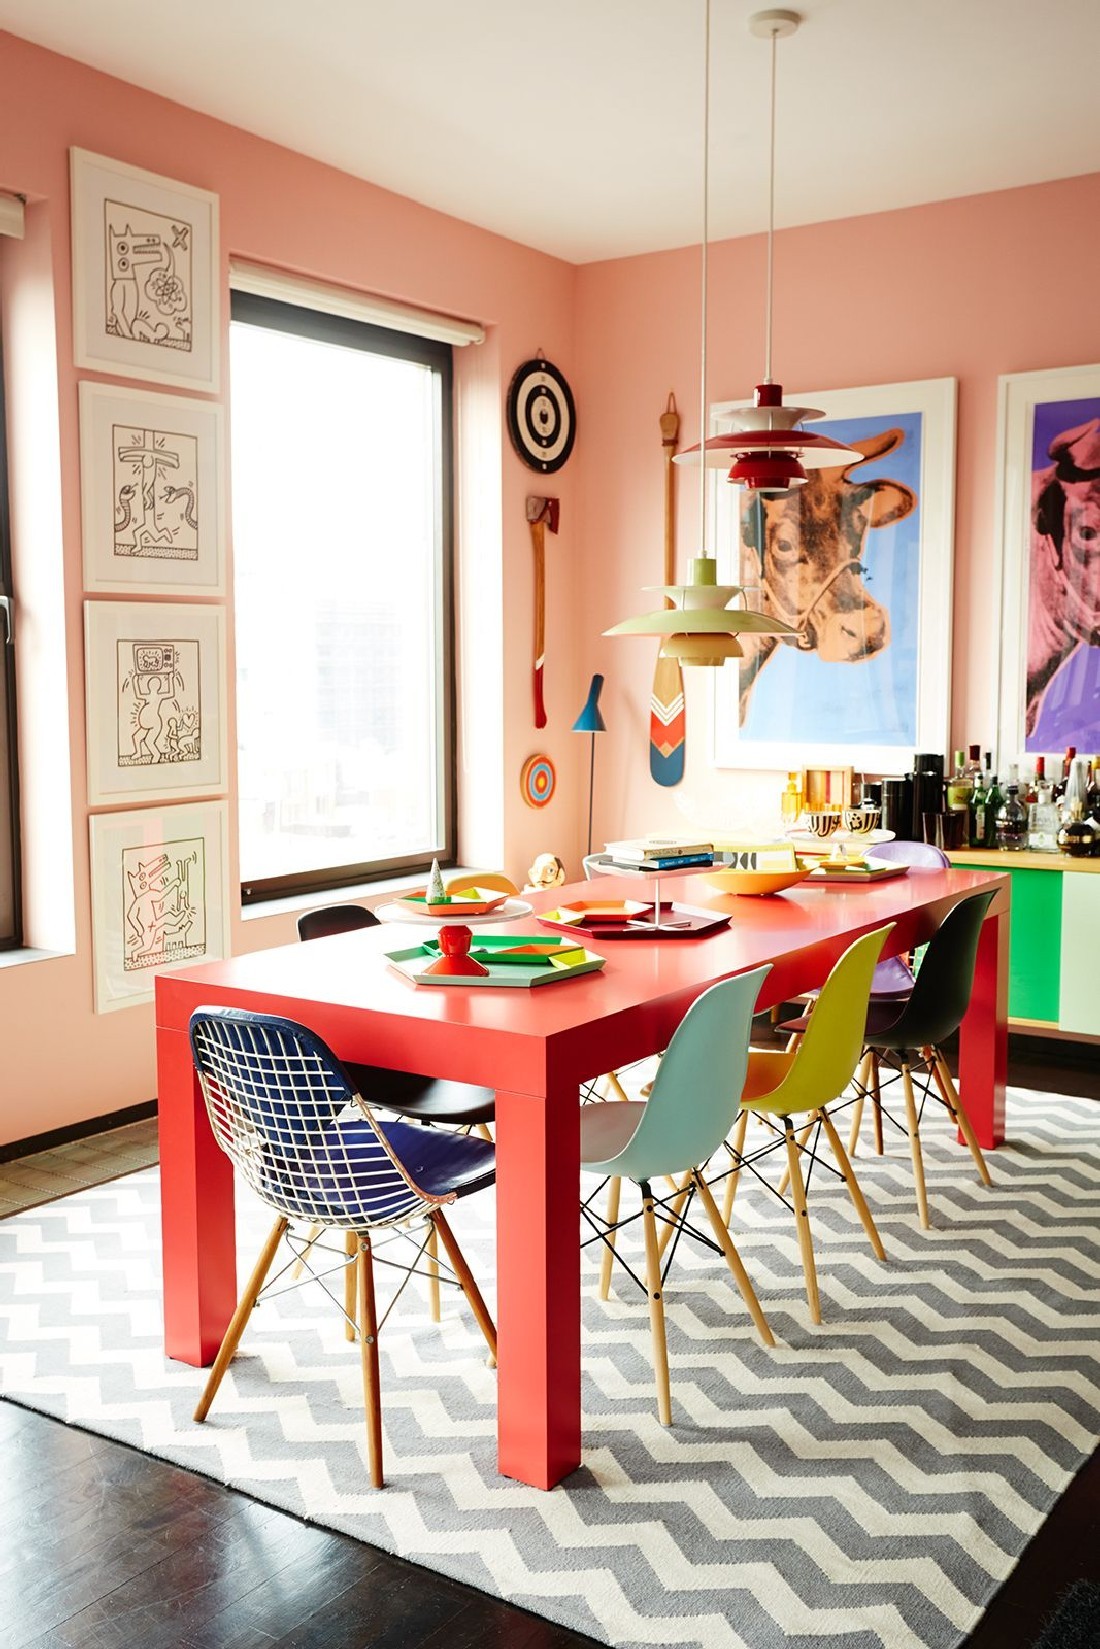 Décor do dia sala de jantar colorida com mix de cadeiras  (Foto: Divulgação)